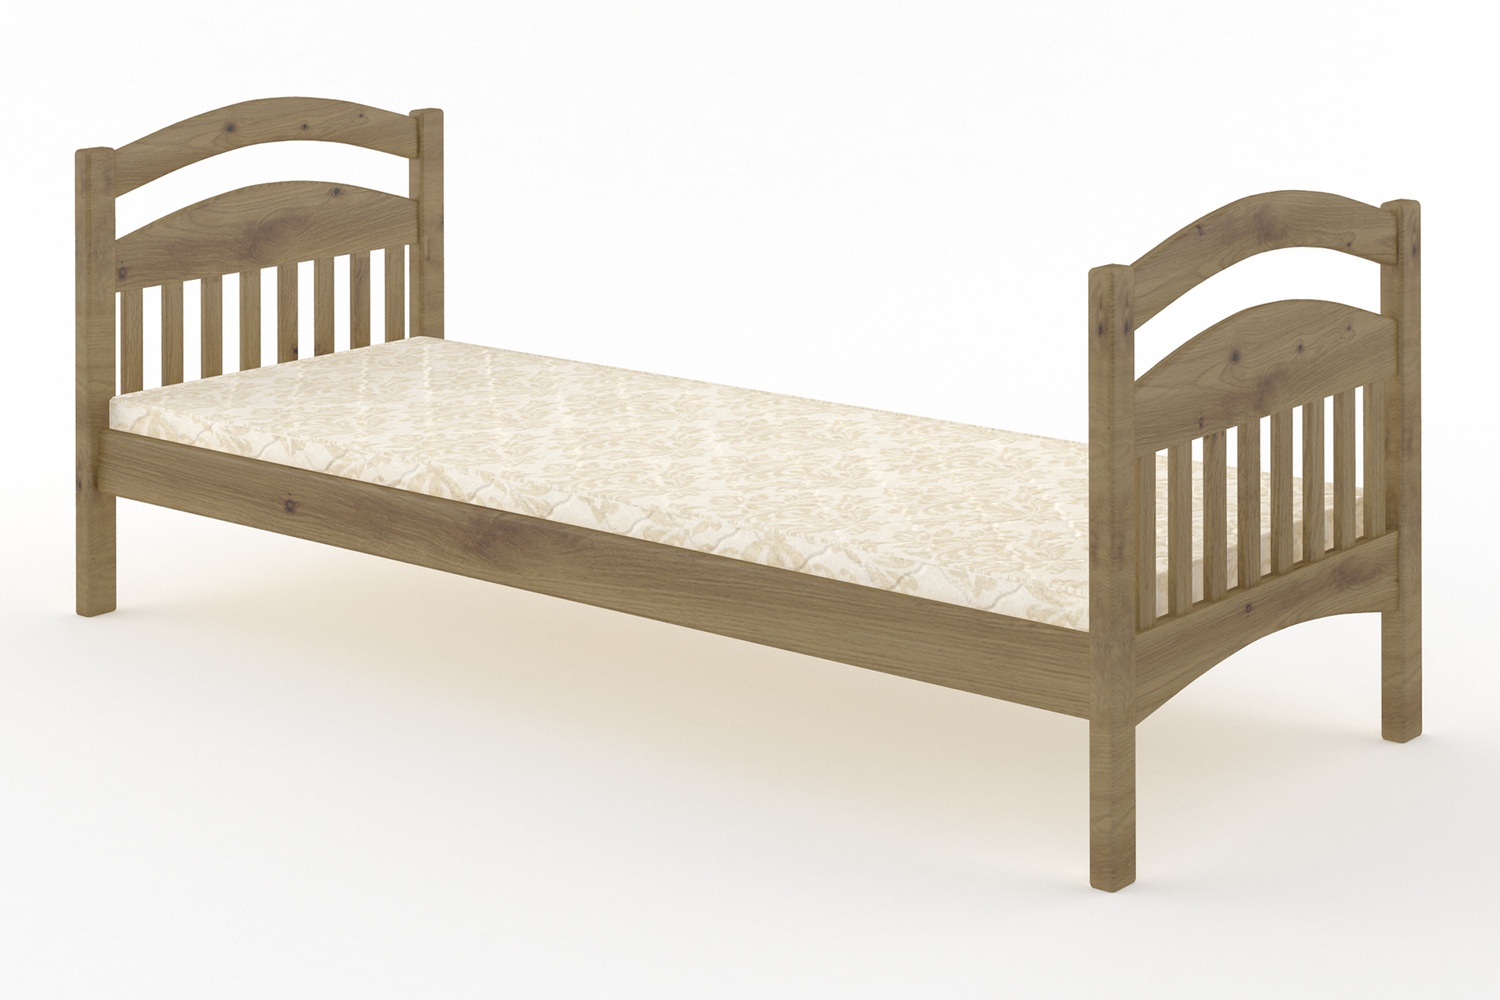 Кровать односпальная Аврора Литл (Zhasmin) 80х190 см zhmnlttl-80x190 фото